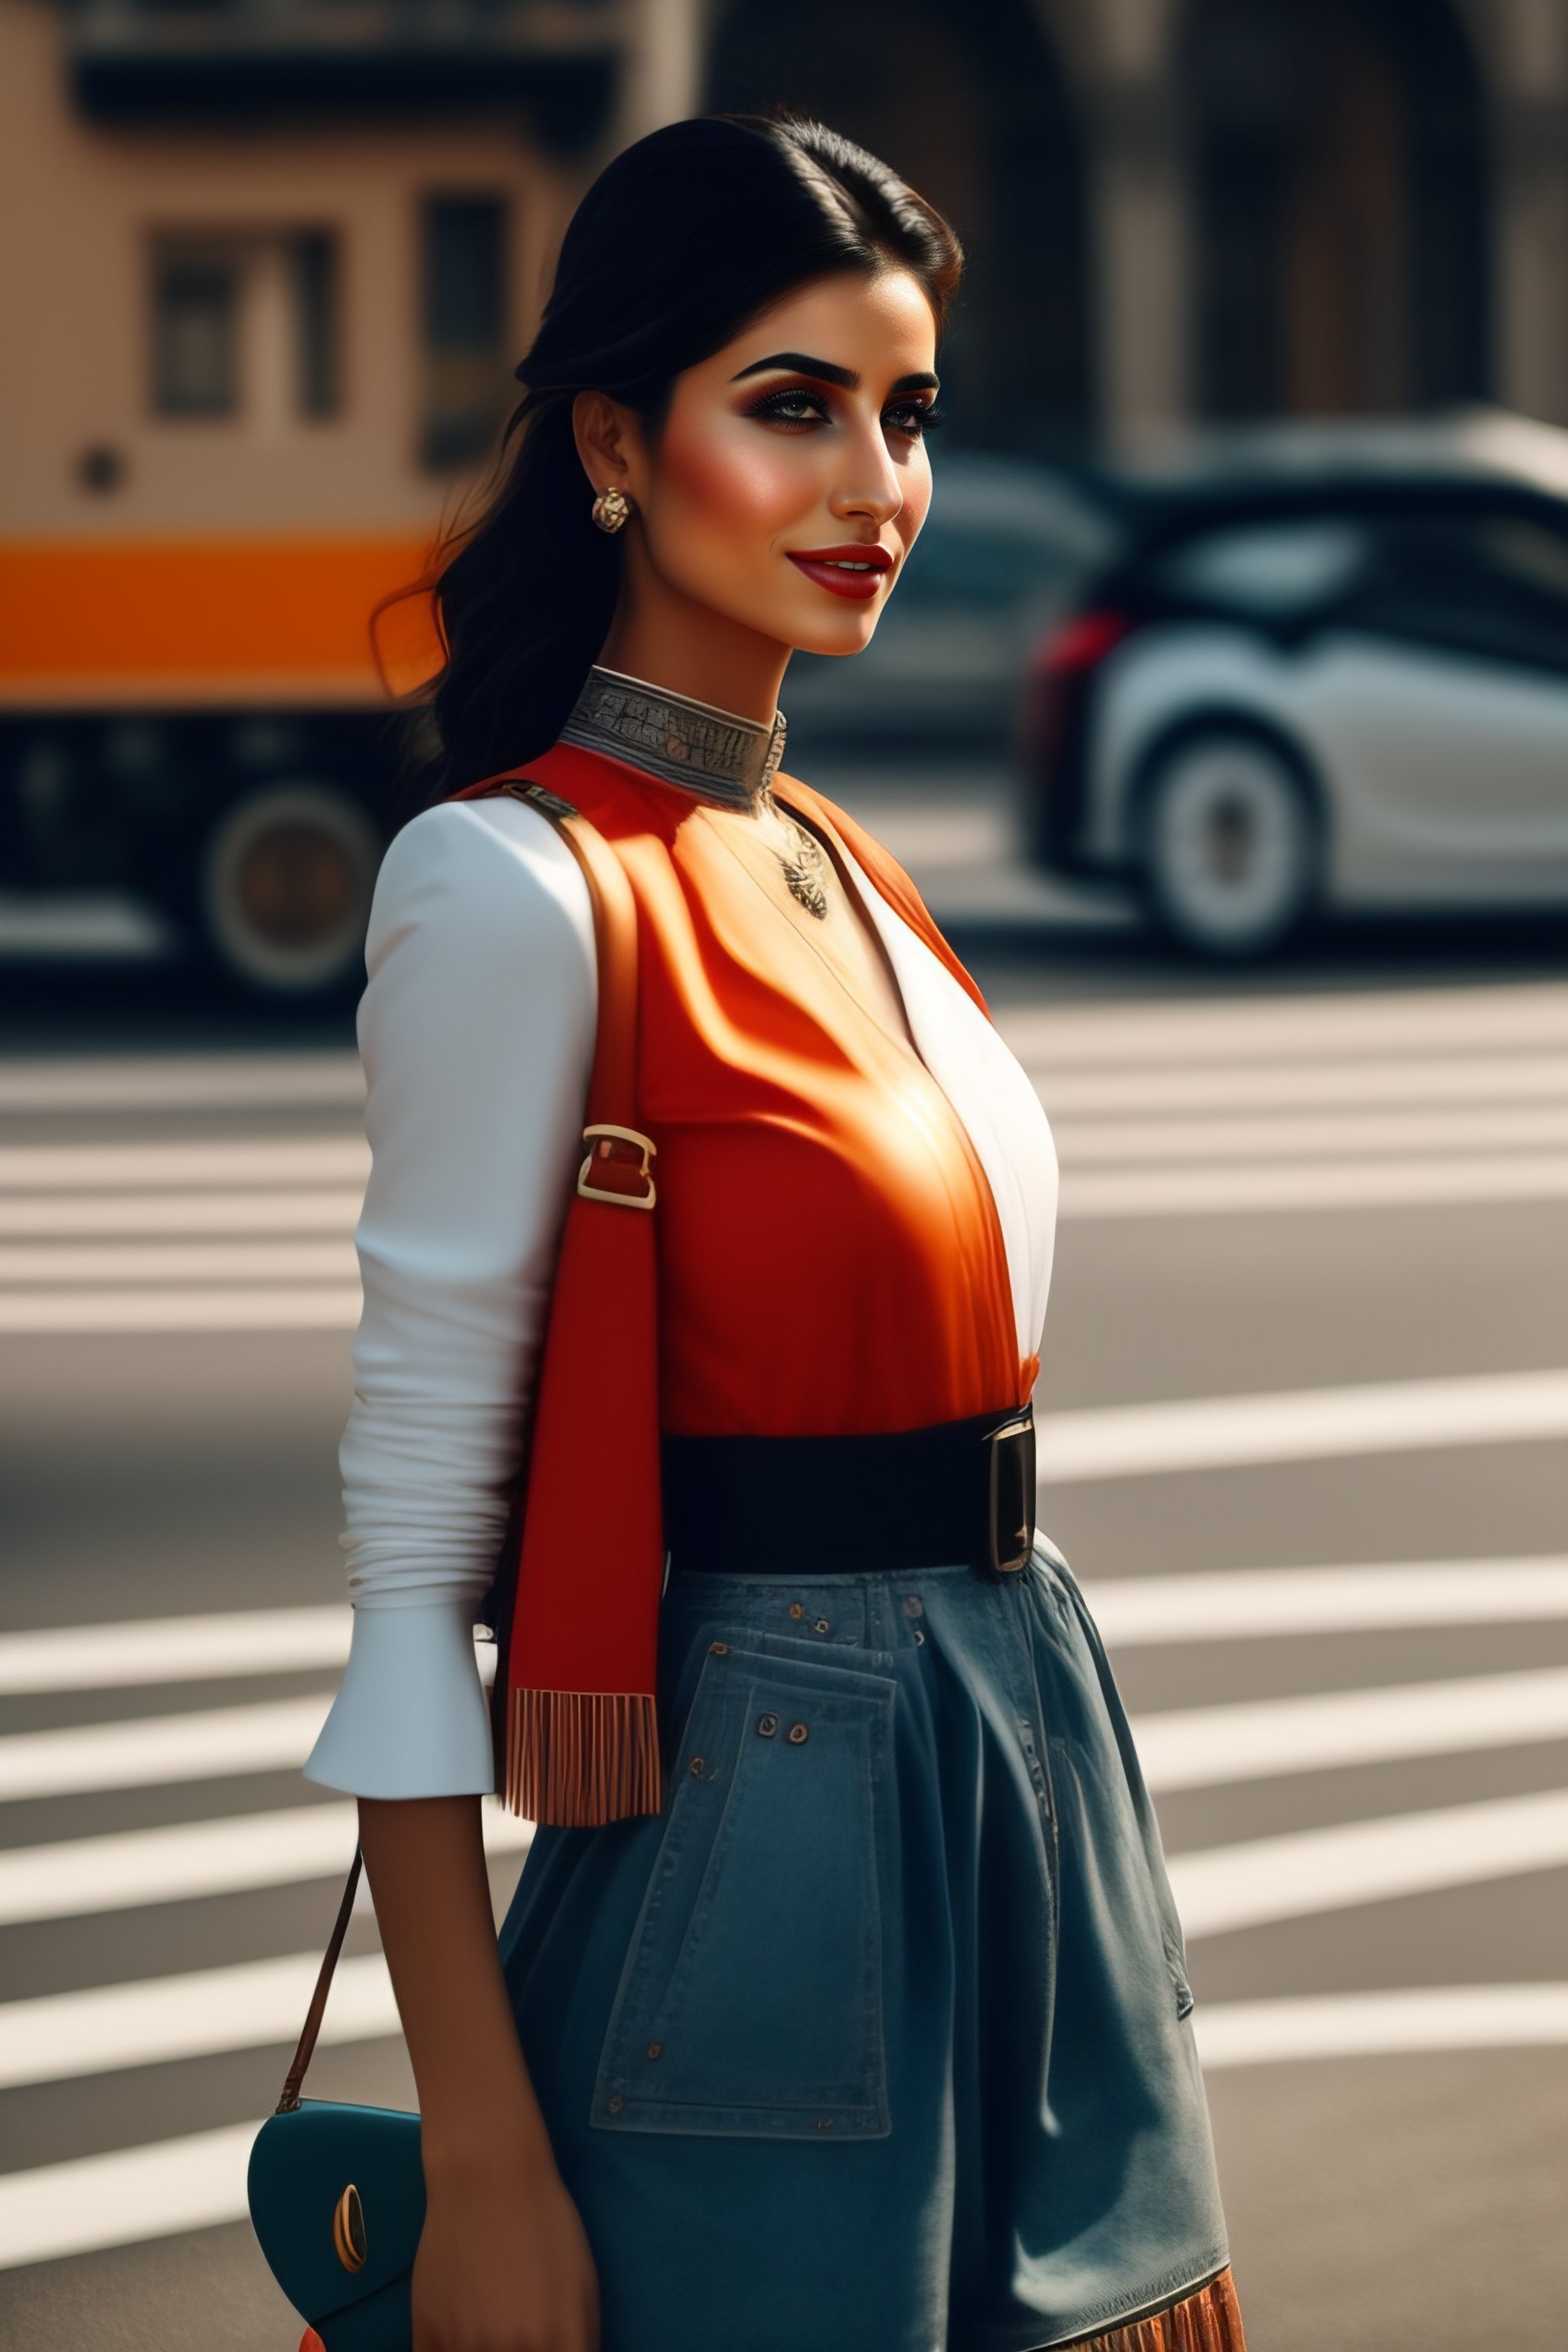 Lexica - Turkish girl in modern fashion